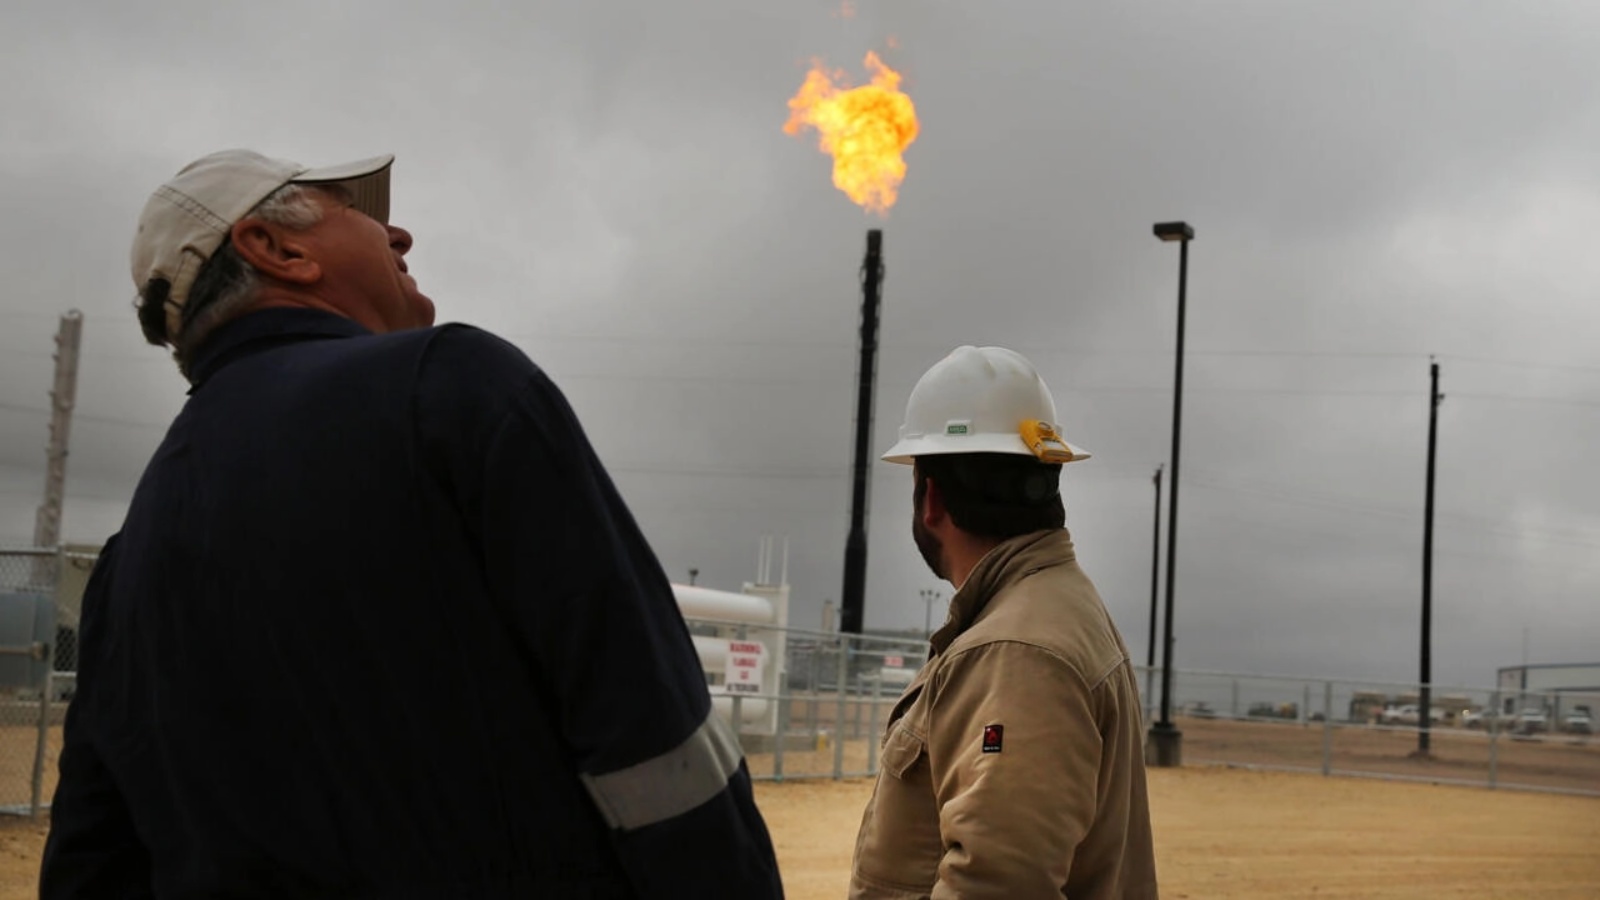 يتم حرق الغاز الطبيعي المشتعل في عمليات Apache Corporations في مصنع الغاز الطبيعي Deadwood في حوض برميان في عام 2015